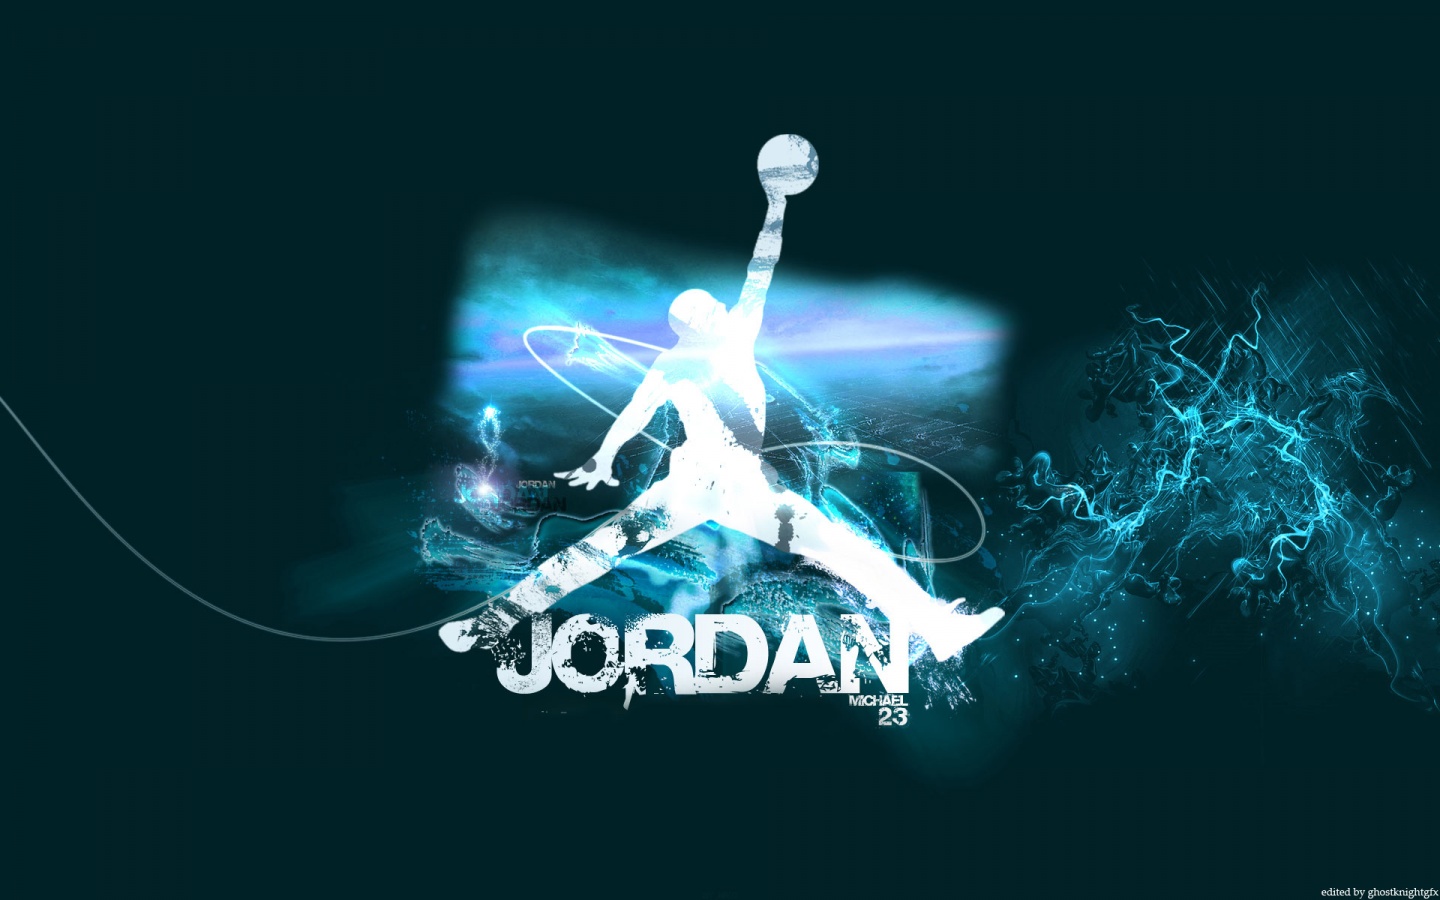 Air Jordan Logo Wallpaper 5162 Hd Wallpapers in Logos   Imagescicom 1440x900